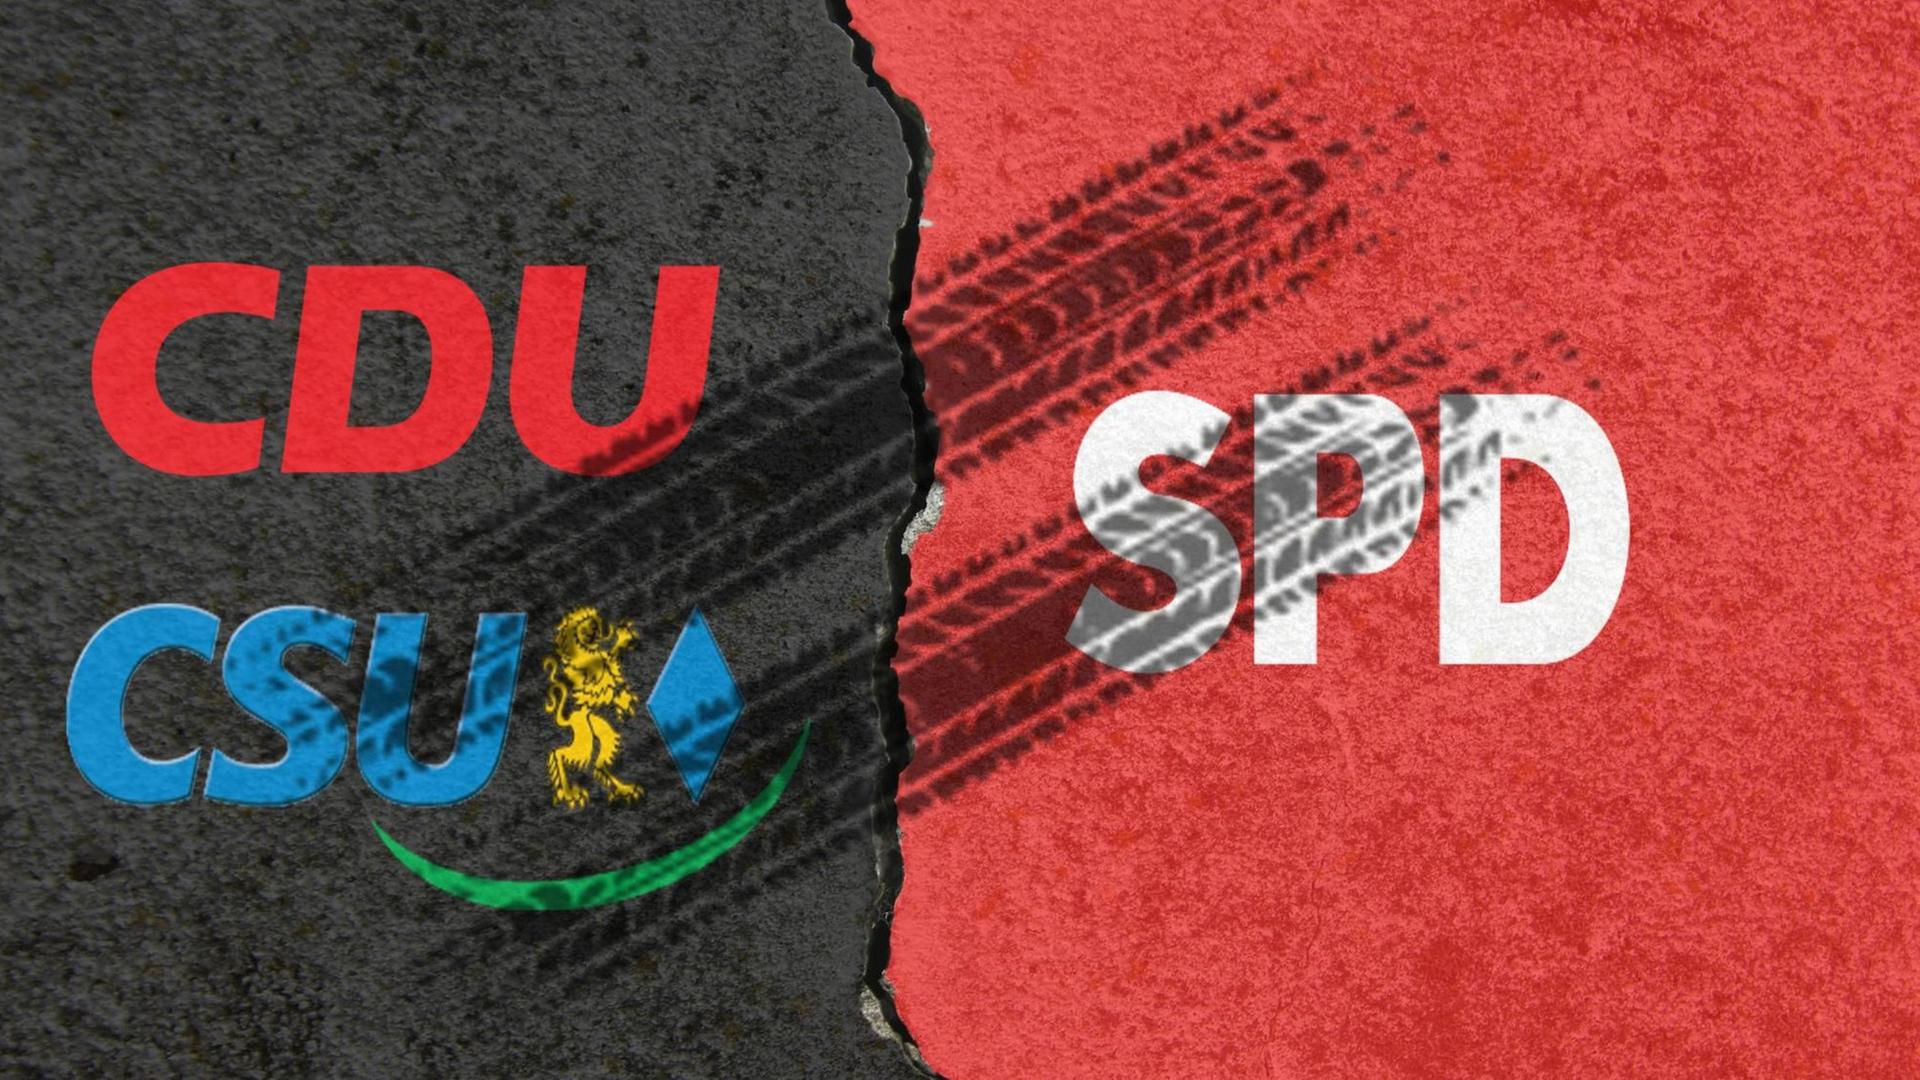 Die Namen der Parteien CDU und CSU auf schwarzem Hintergrund stehen neben dem Namen SPD auf rotem Hintergrund, darüber sind Bremsspuren zu sehen.